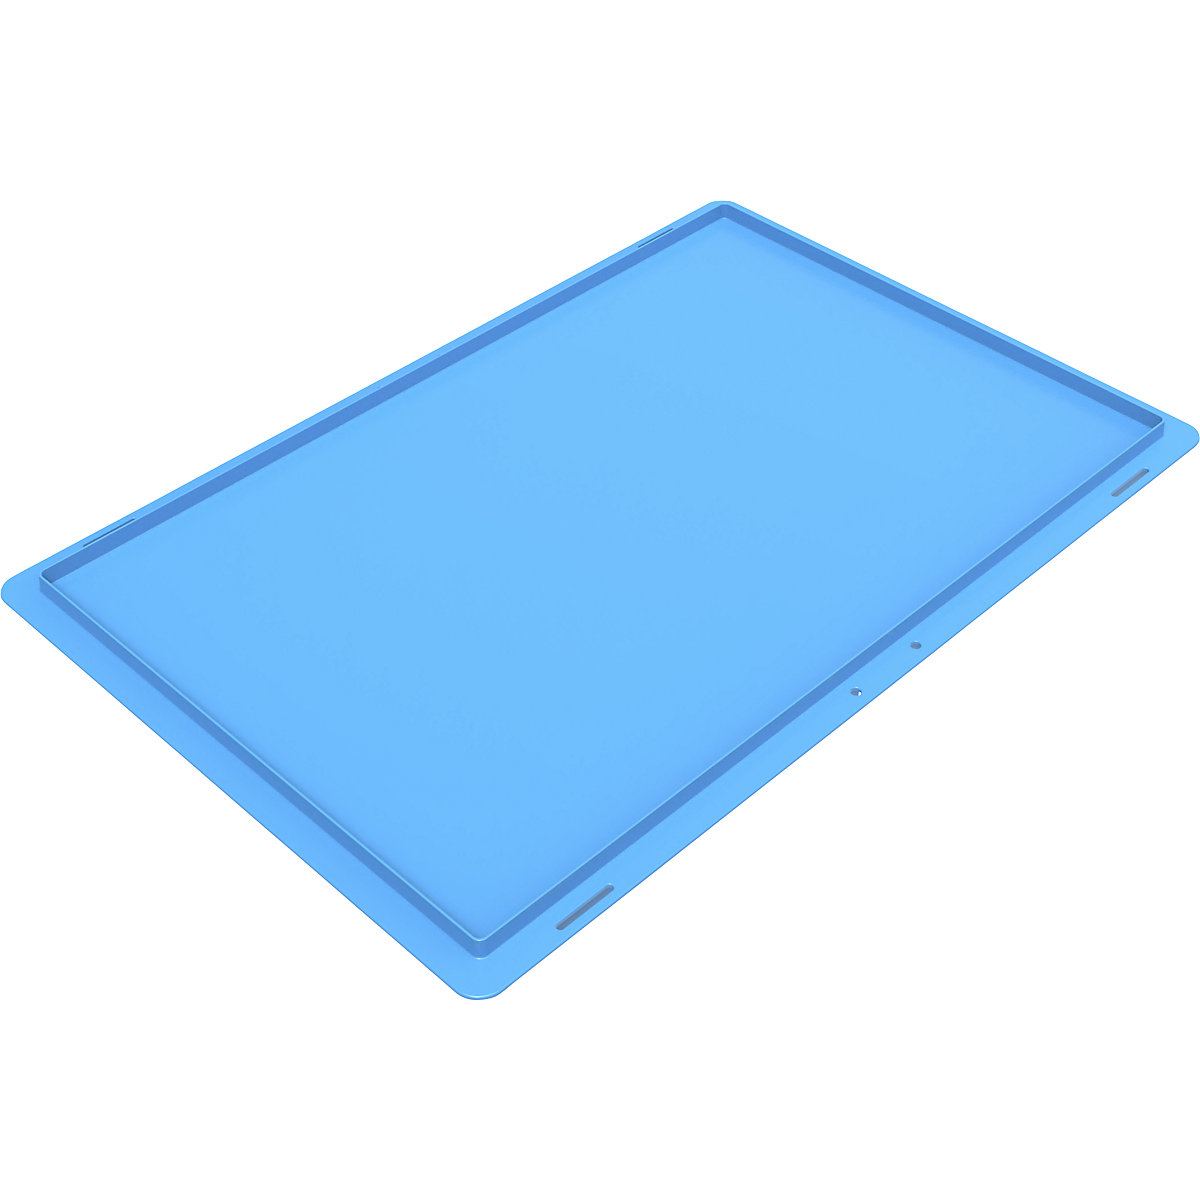 Pokrywa nakładana do pojemnika składanego, niebieska (Zdjęcie produktu 2)-1